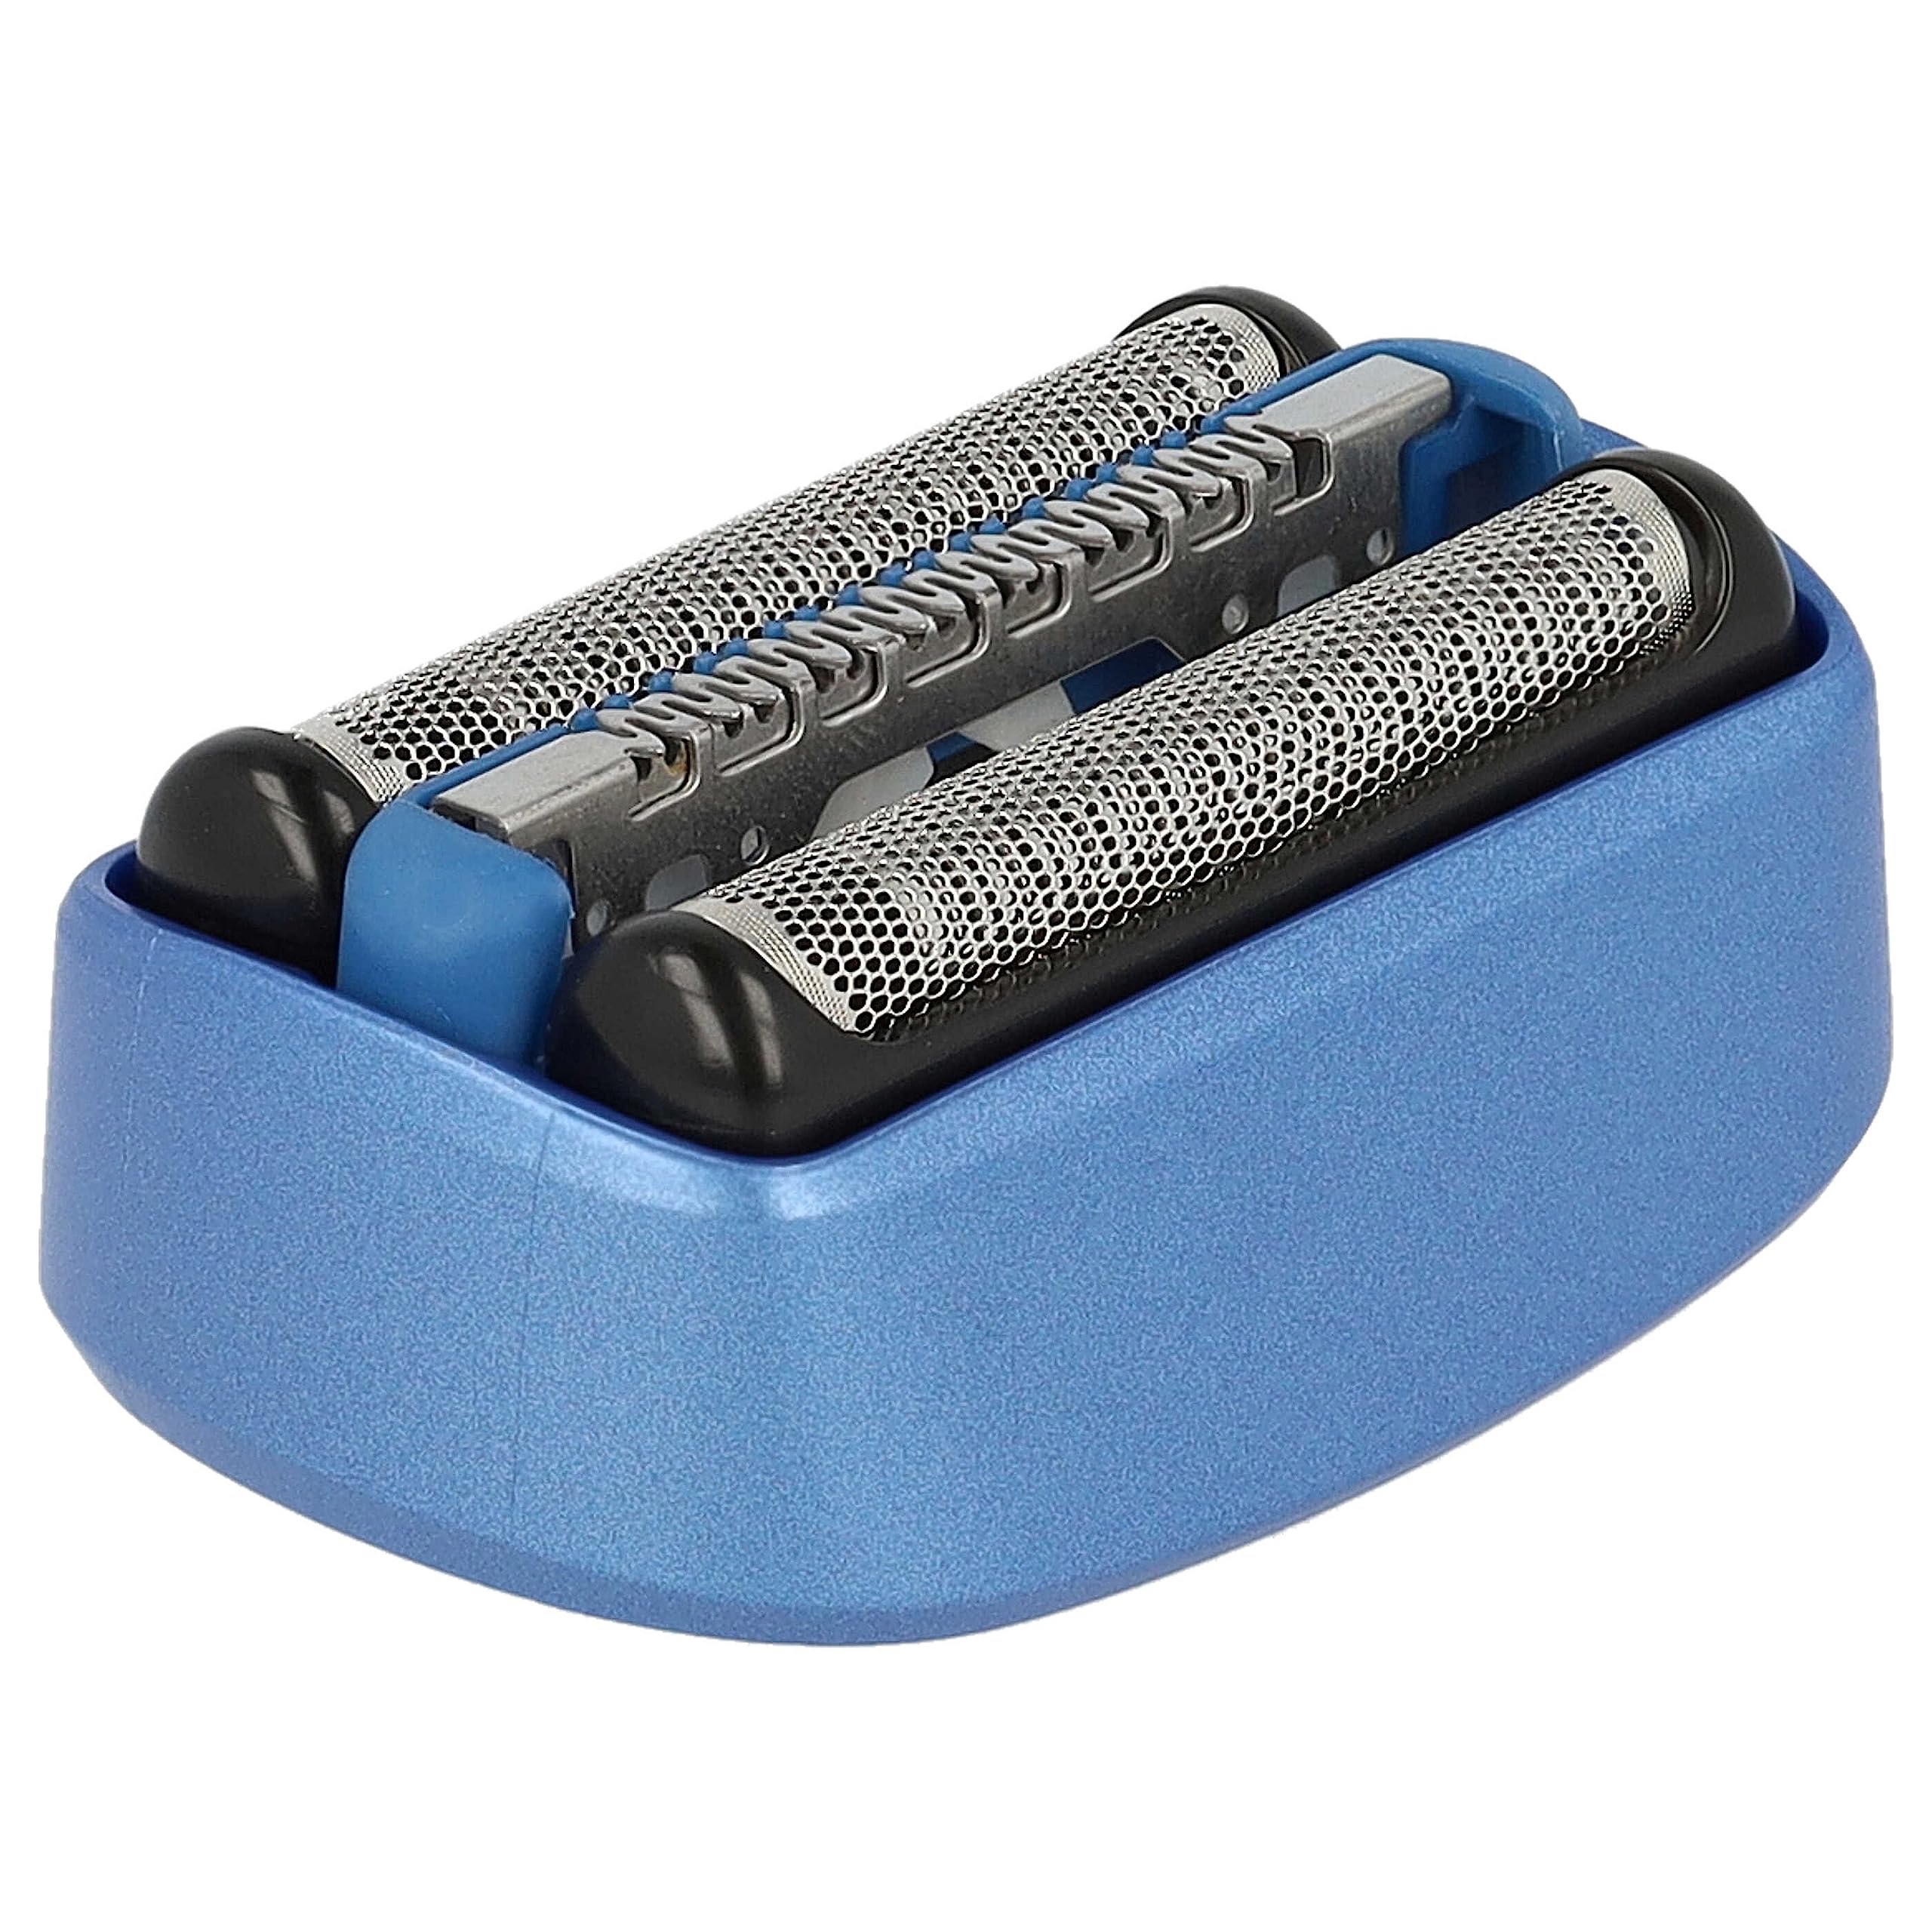 vhbw Rasierkopf kompatibel mit Braun CoolTec CT4S, CT5CC, CT6CC Typ 5676 Elektrorasierer - Scherkopfkassette, schwarz/blau